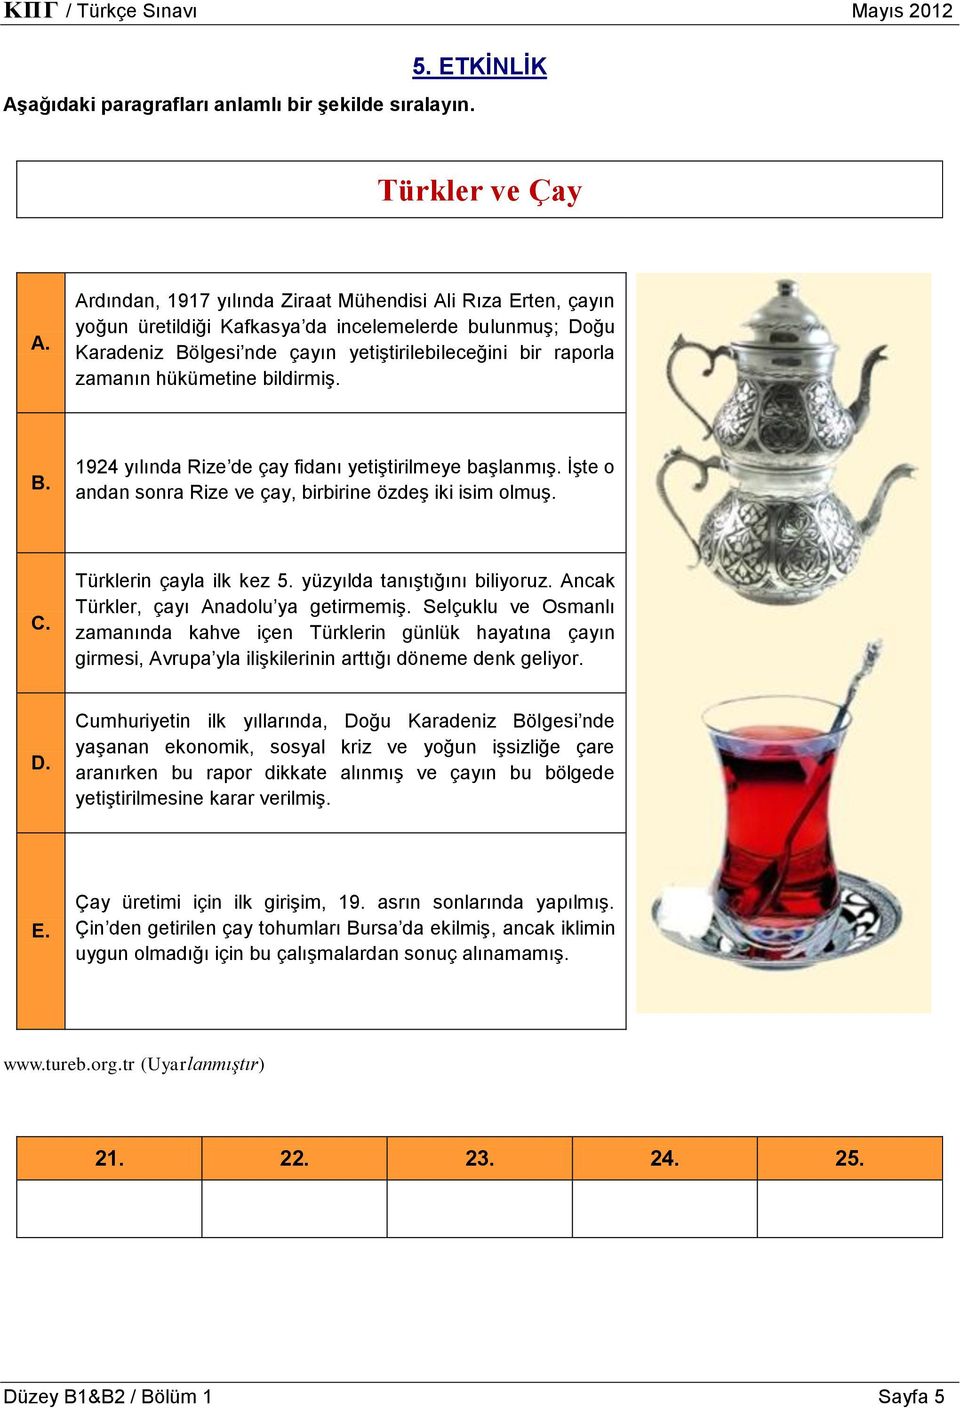 hükümetine bildirmiş. B. 1924 yılında Rize de çay fidanı yetiştirilmeye başlanmış. İşte o andan sonra Rize ve çay, birbirine özdeş iki isim olmuş. C. Türklerin çayla ilk kez 5.